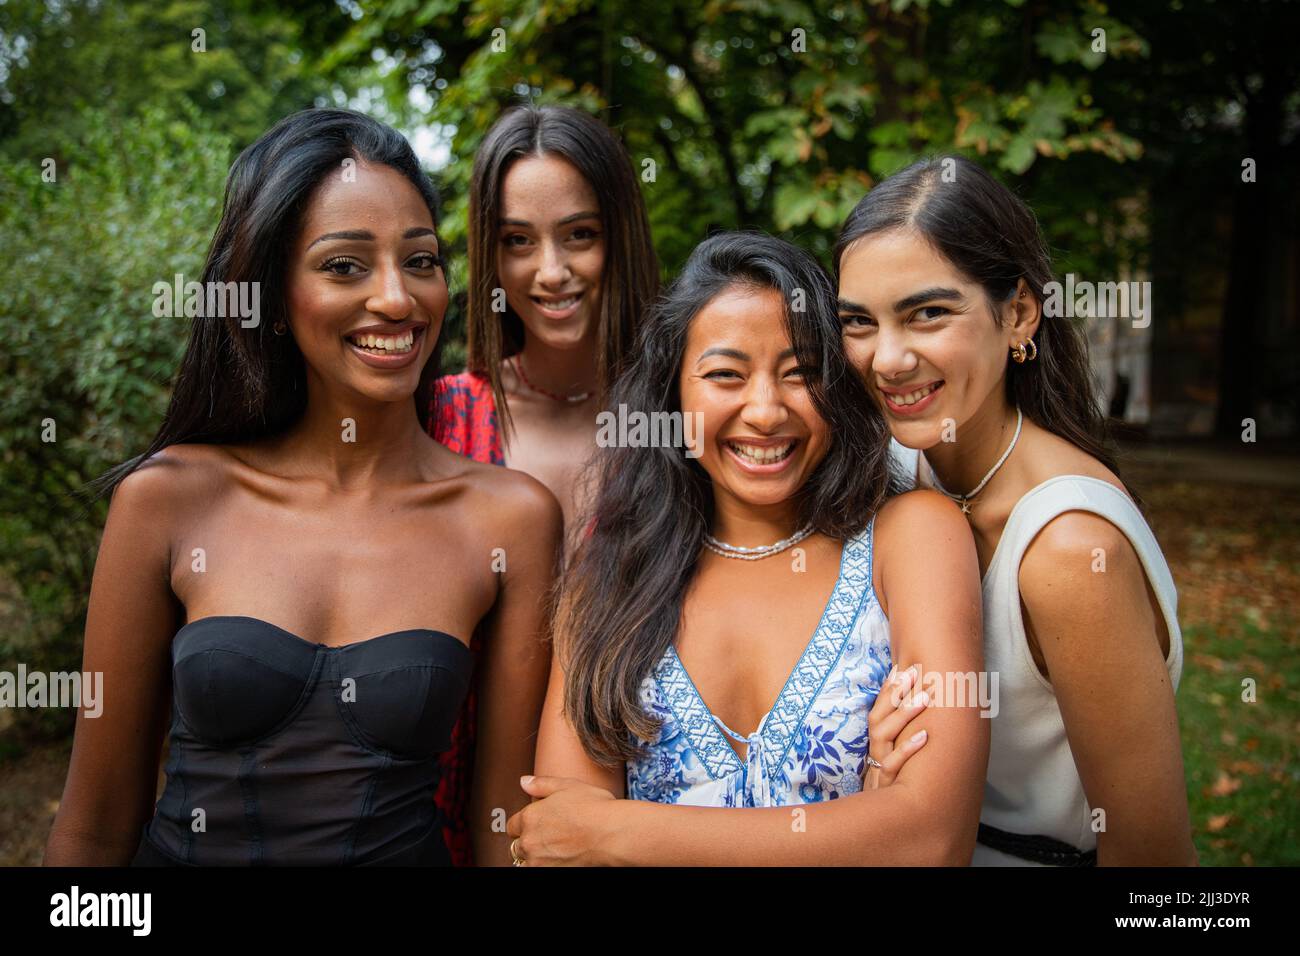 Porträt einer multiethnischen Gruppe von Freundinnen im Freien, ethnische Vielfalt Konzept Stockfoto